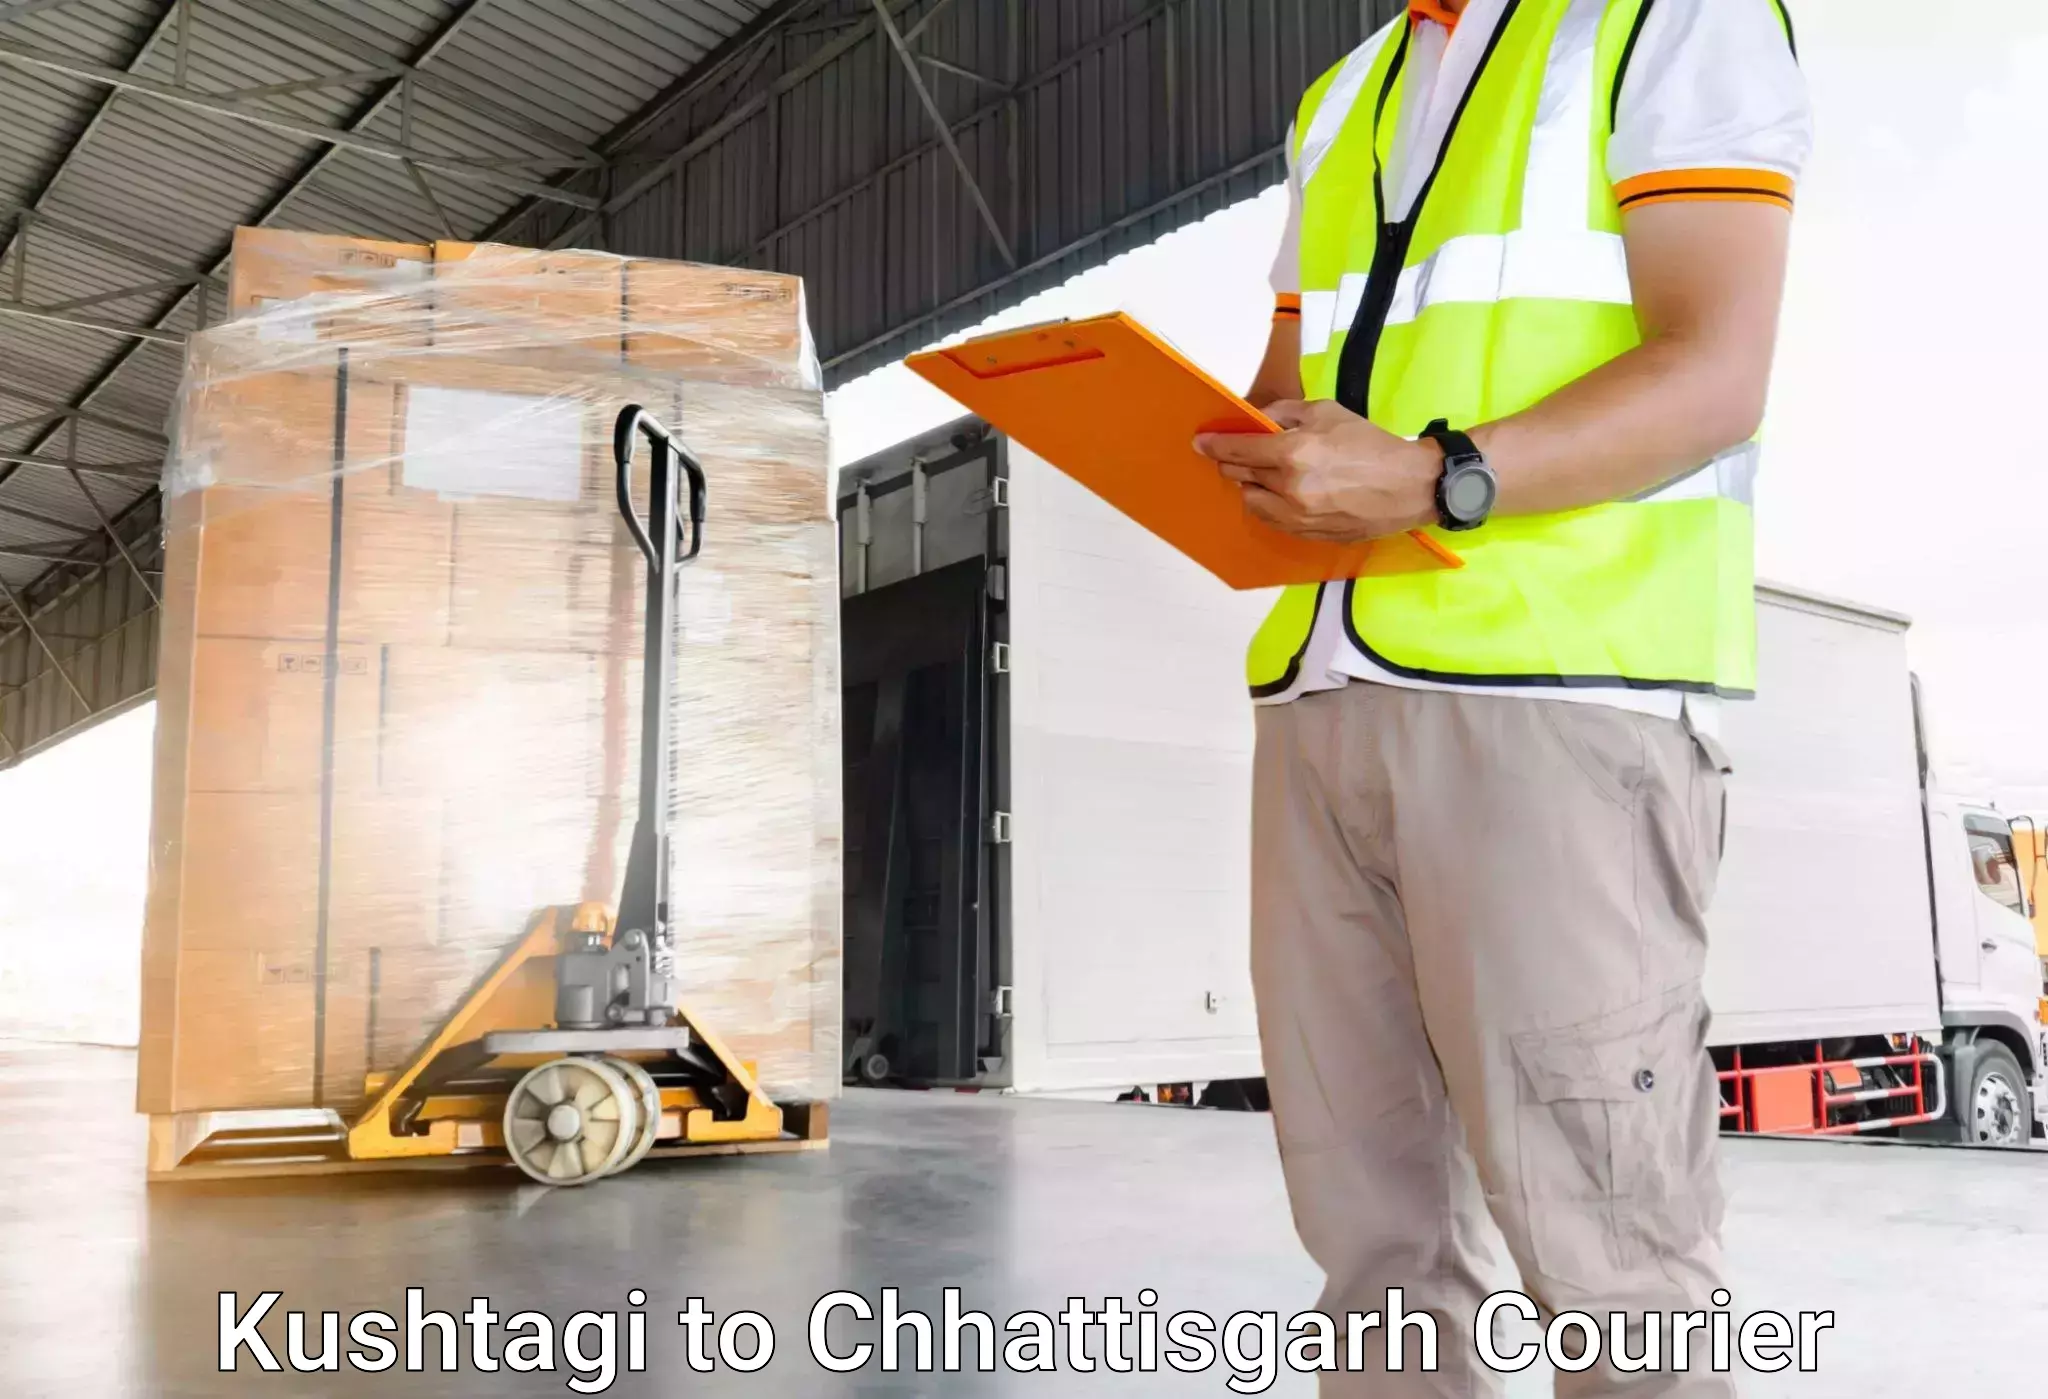 Luggage transport company Kushtagi to Abhanpur